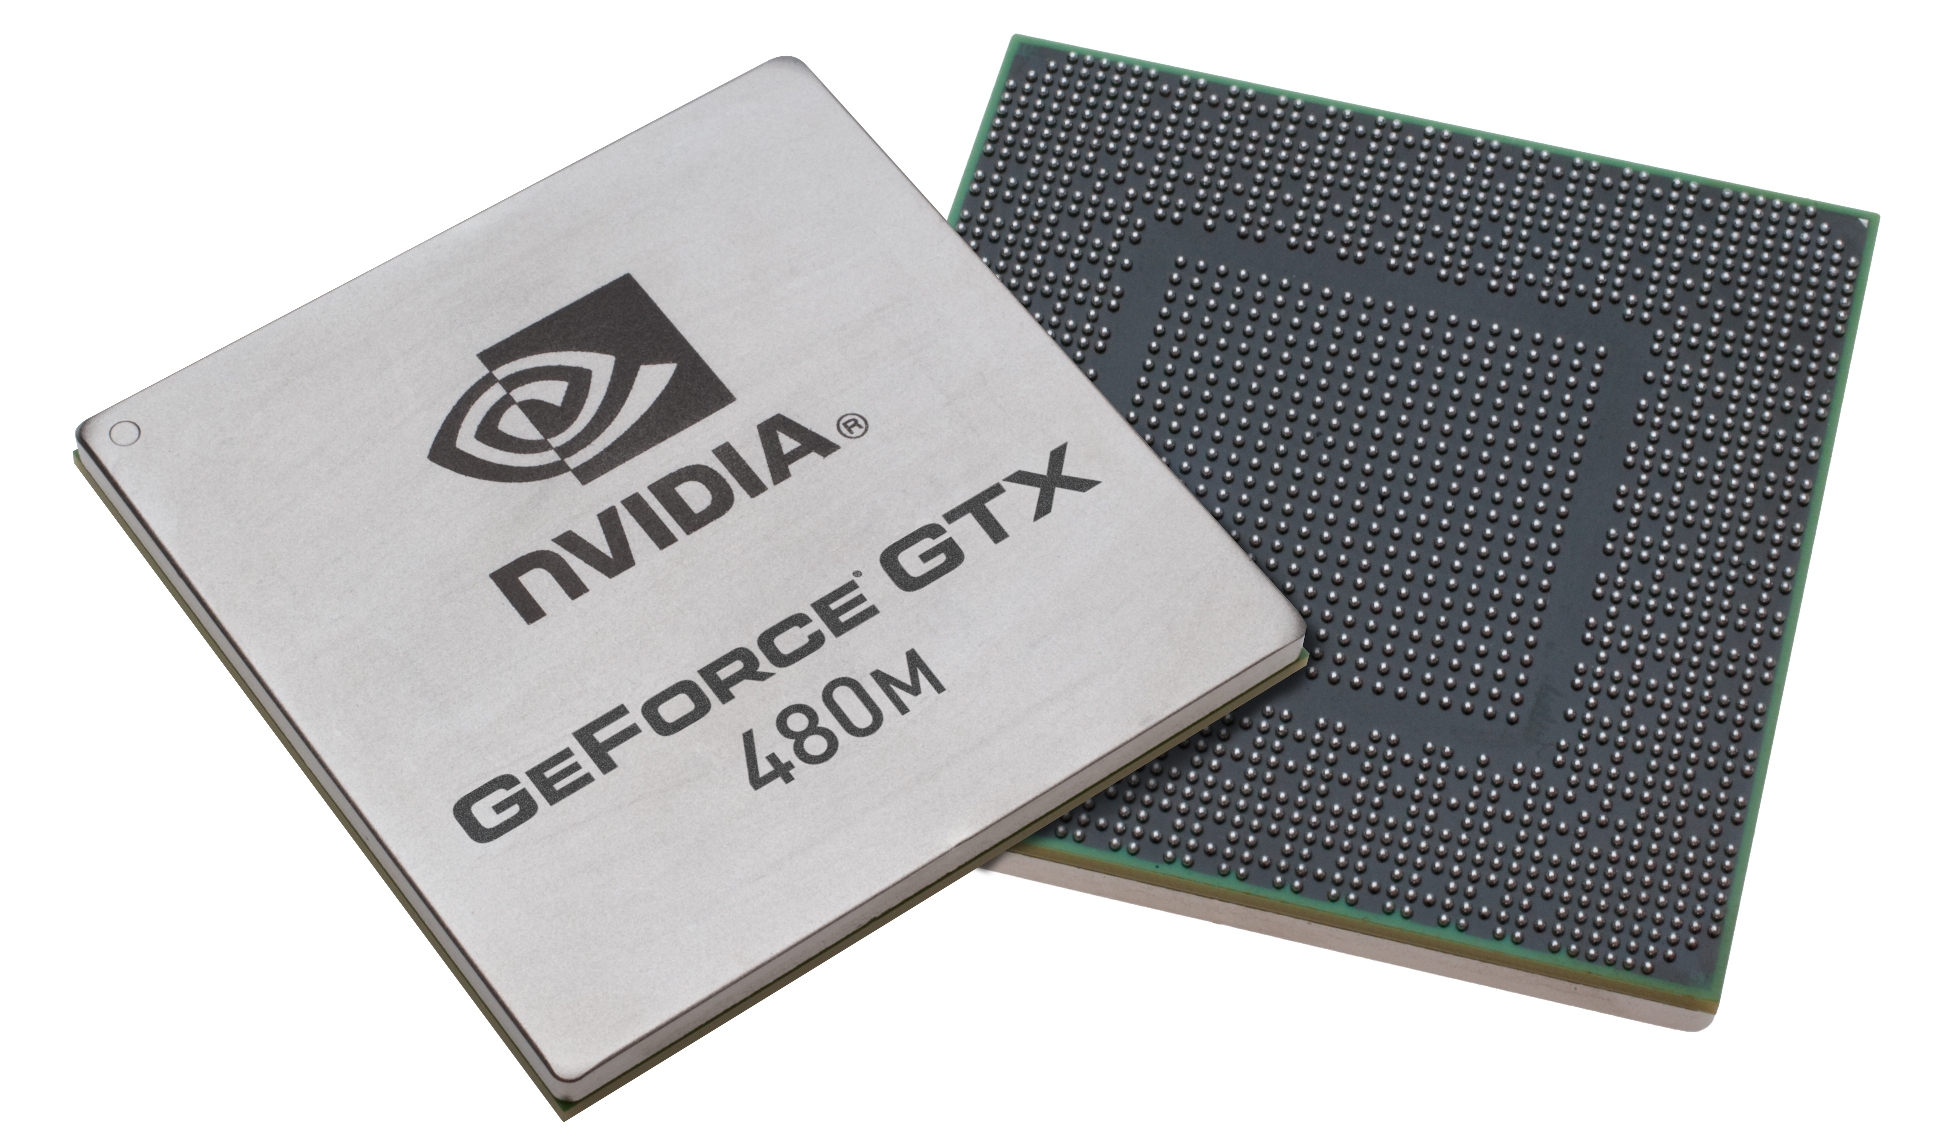 GeForce GTX 480M